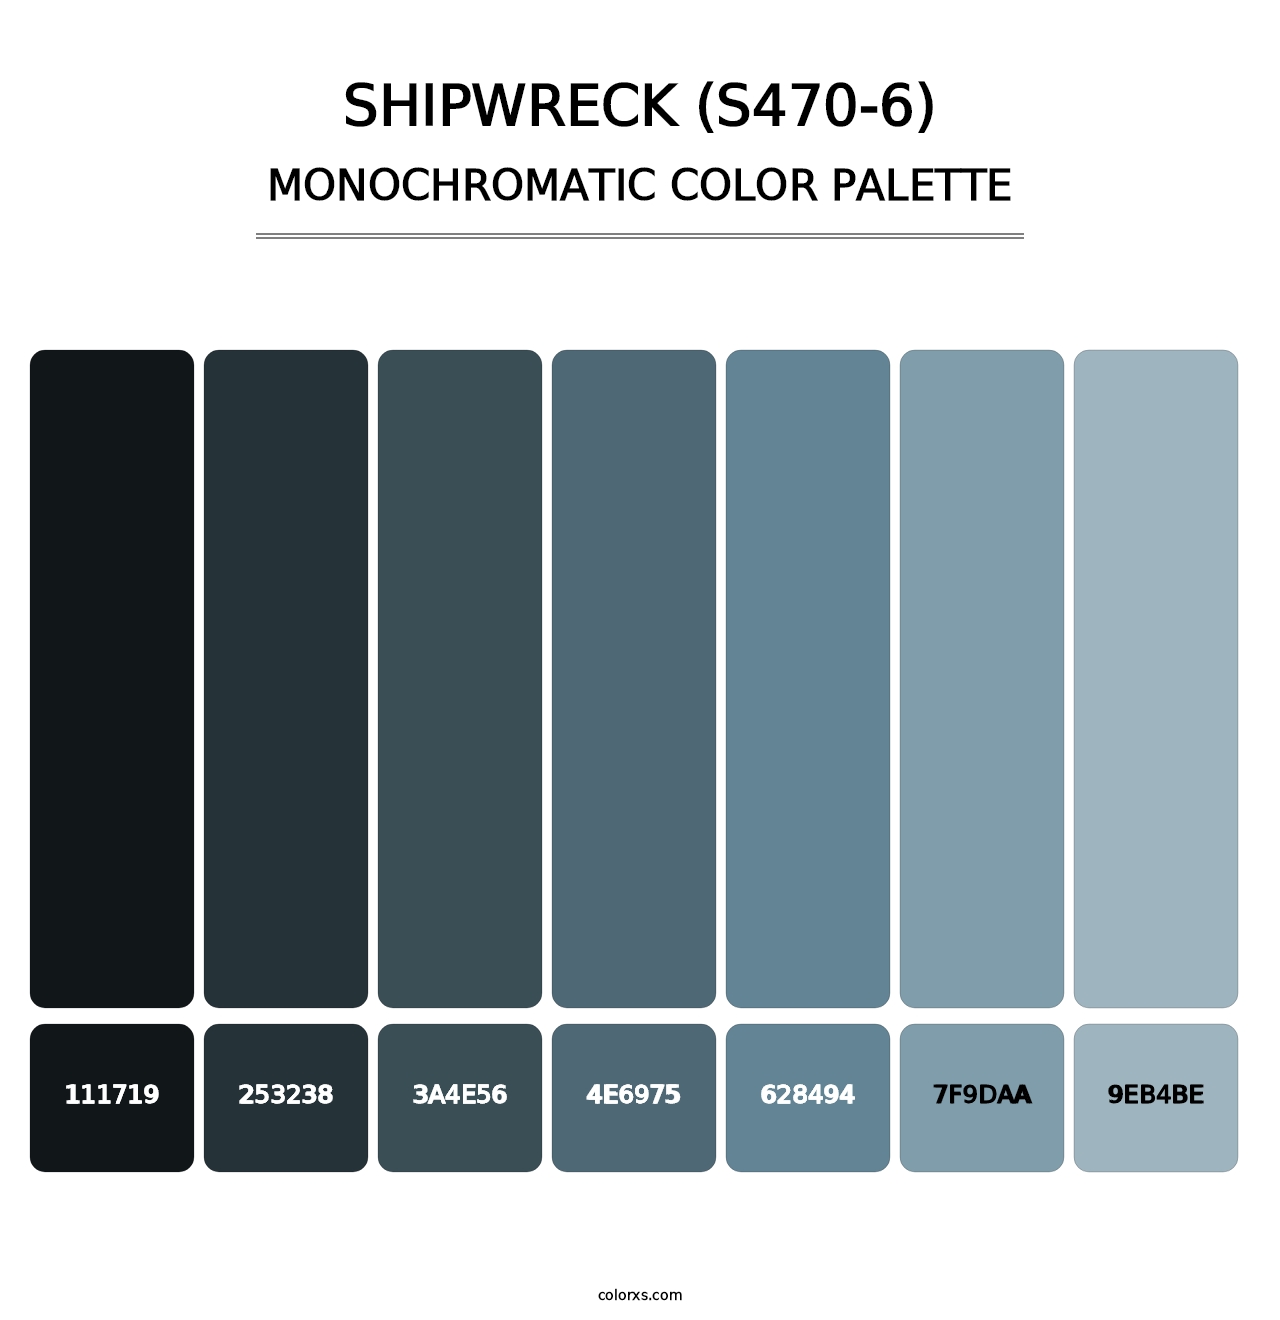 Shipwreck (S470-6) - Monochromatic Color Palette